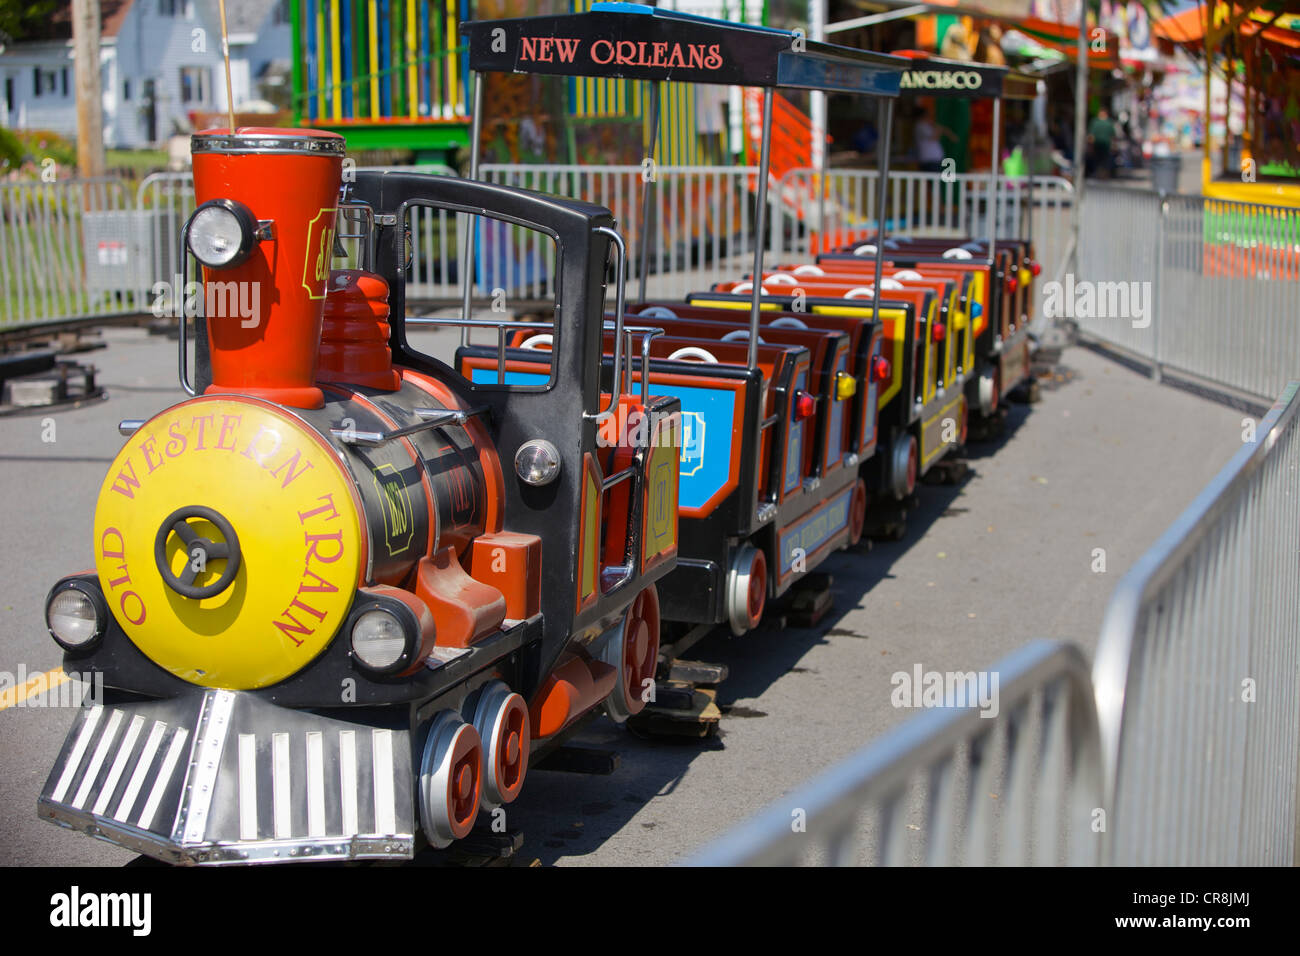 Children's carnival train ride Stock Photo